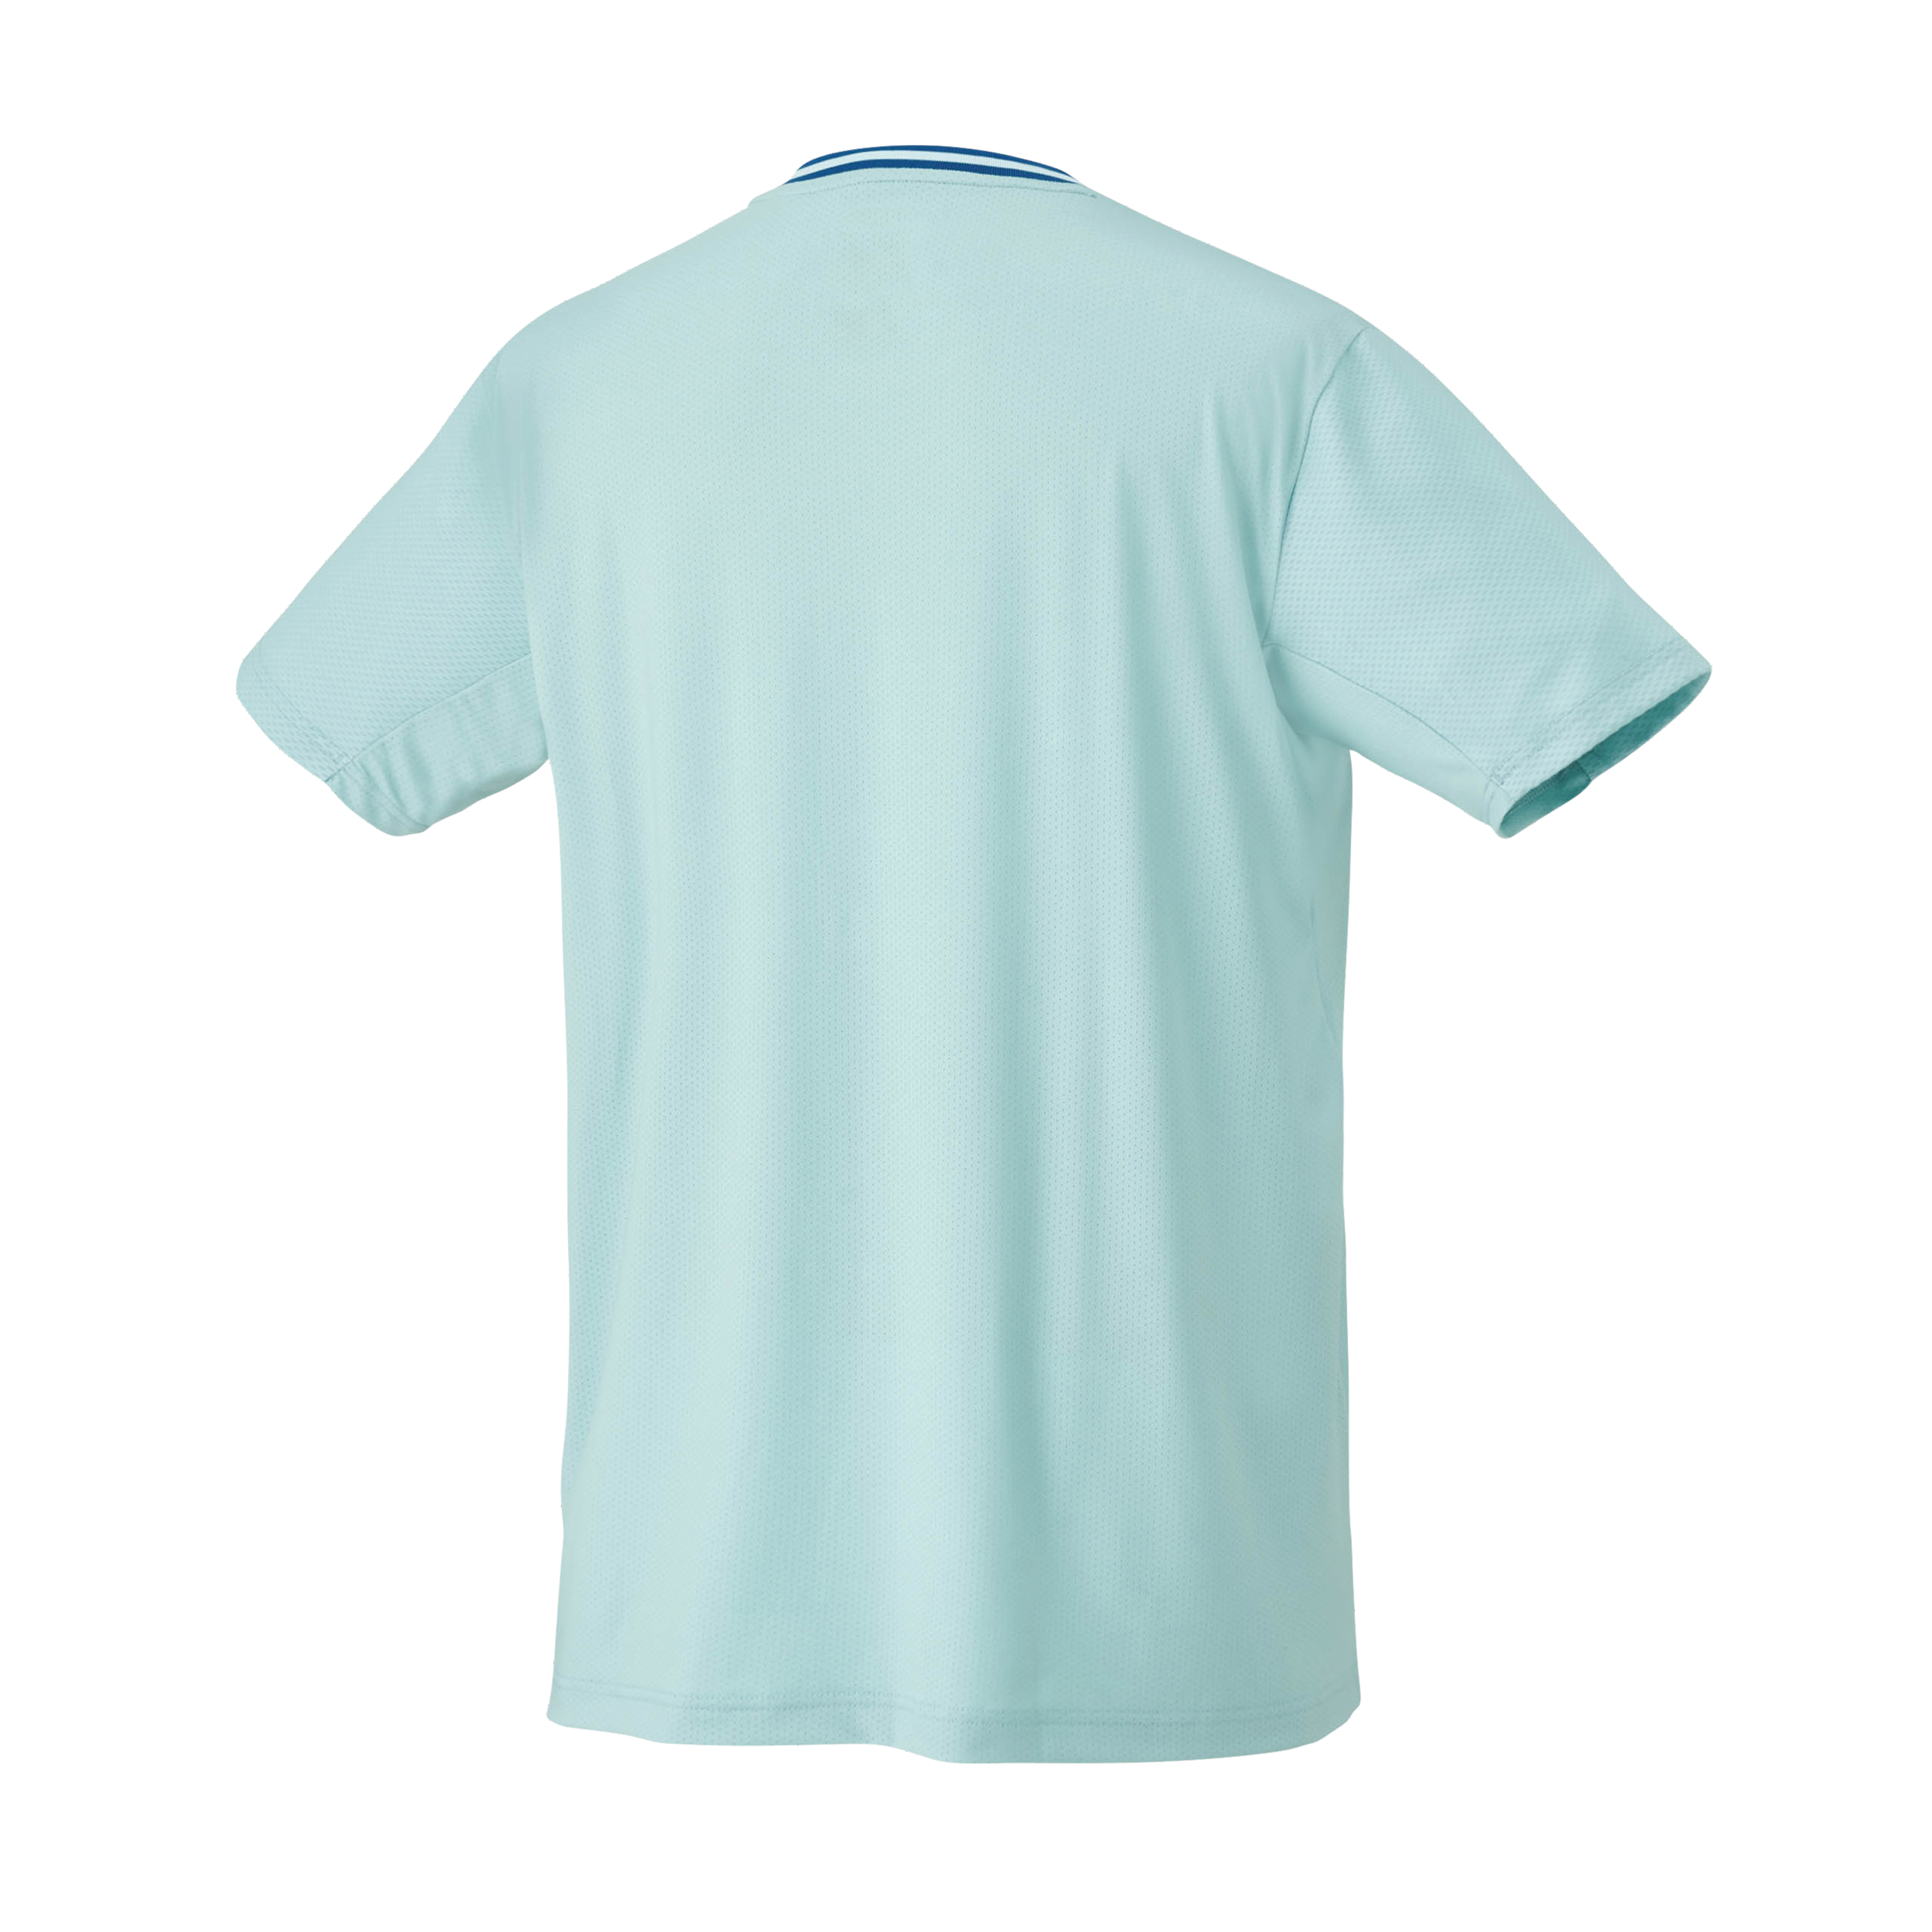 Yonex Premium Badminton/ Tennis Shirt 10559 Cyan MEN'S